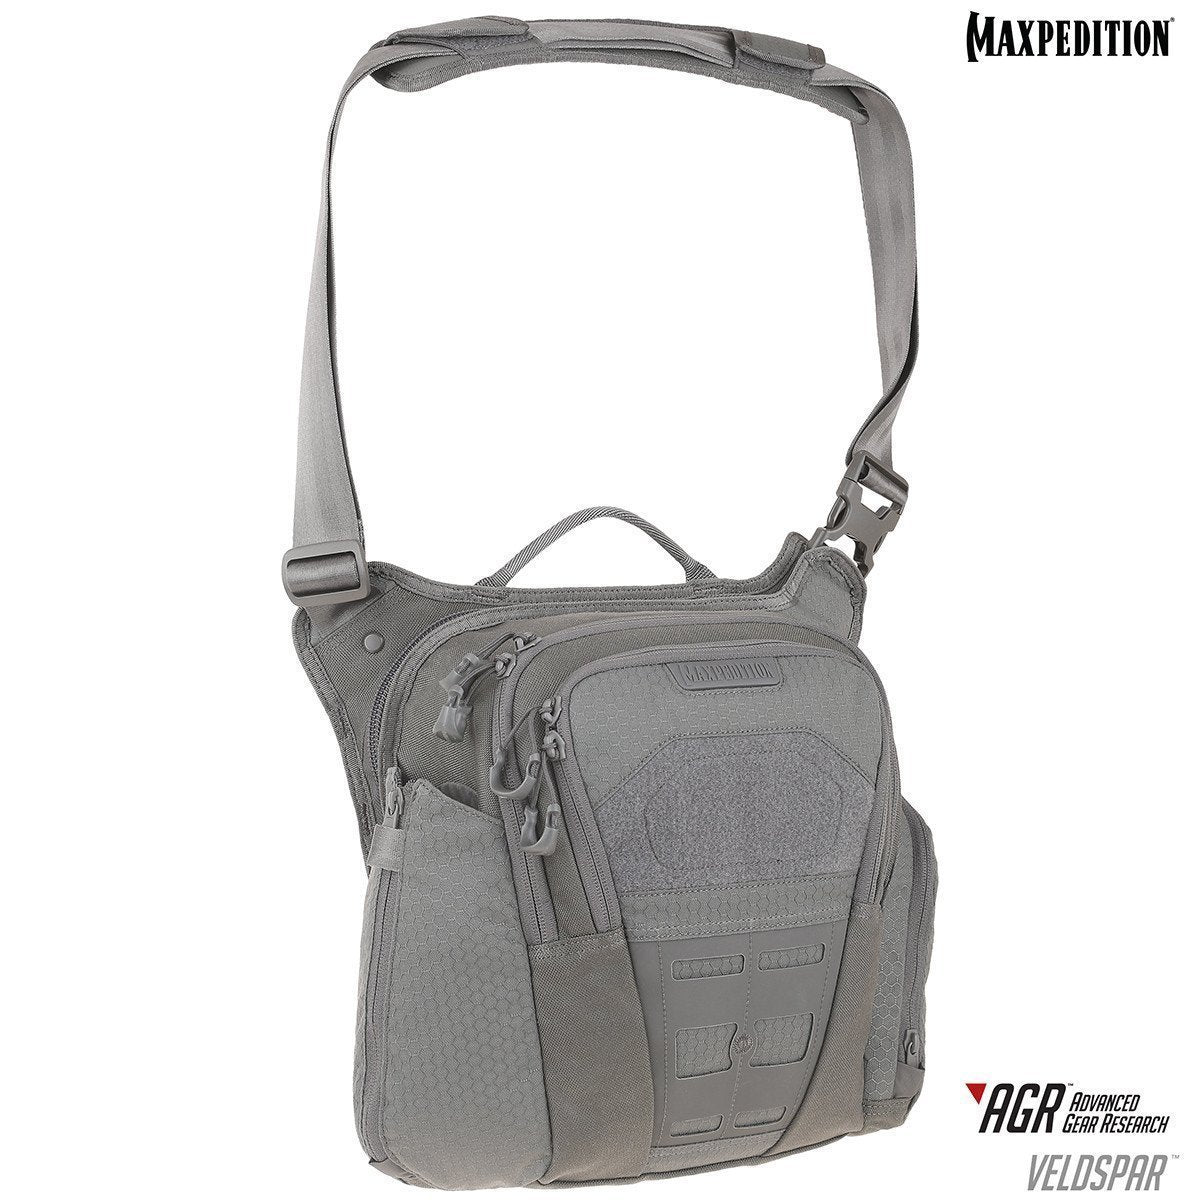 Maxpedition Veldspar Crossbody Shoulder Bag 8L Gray Tactical Distributors Ltd New Zealand